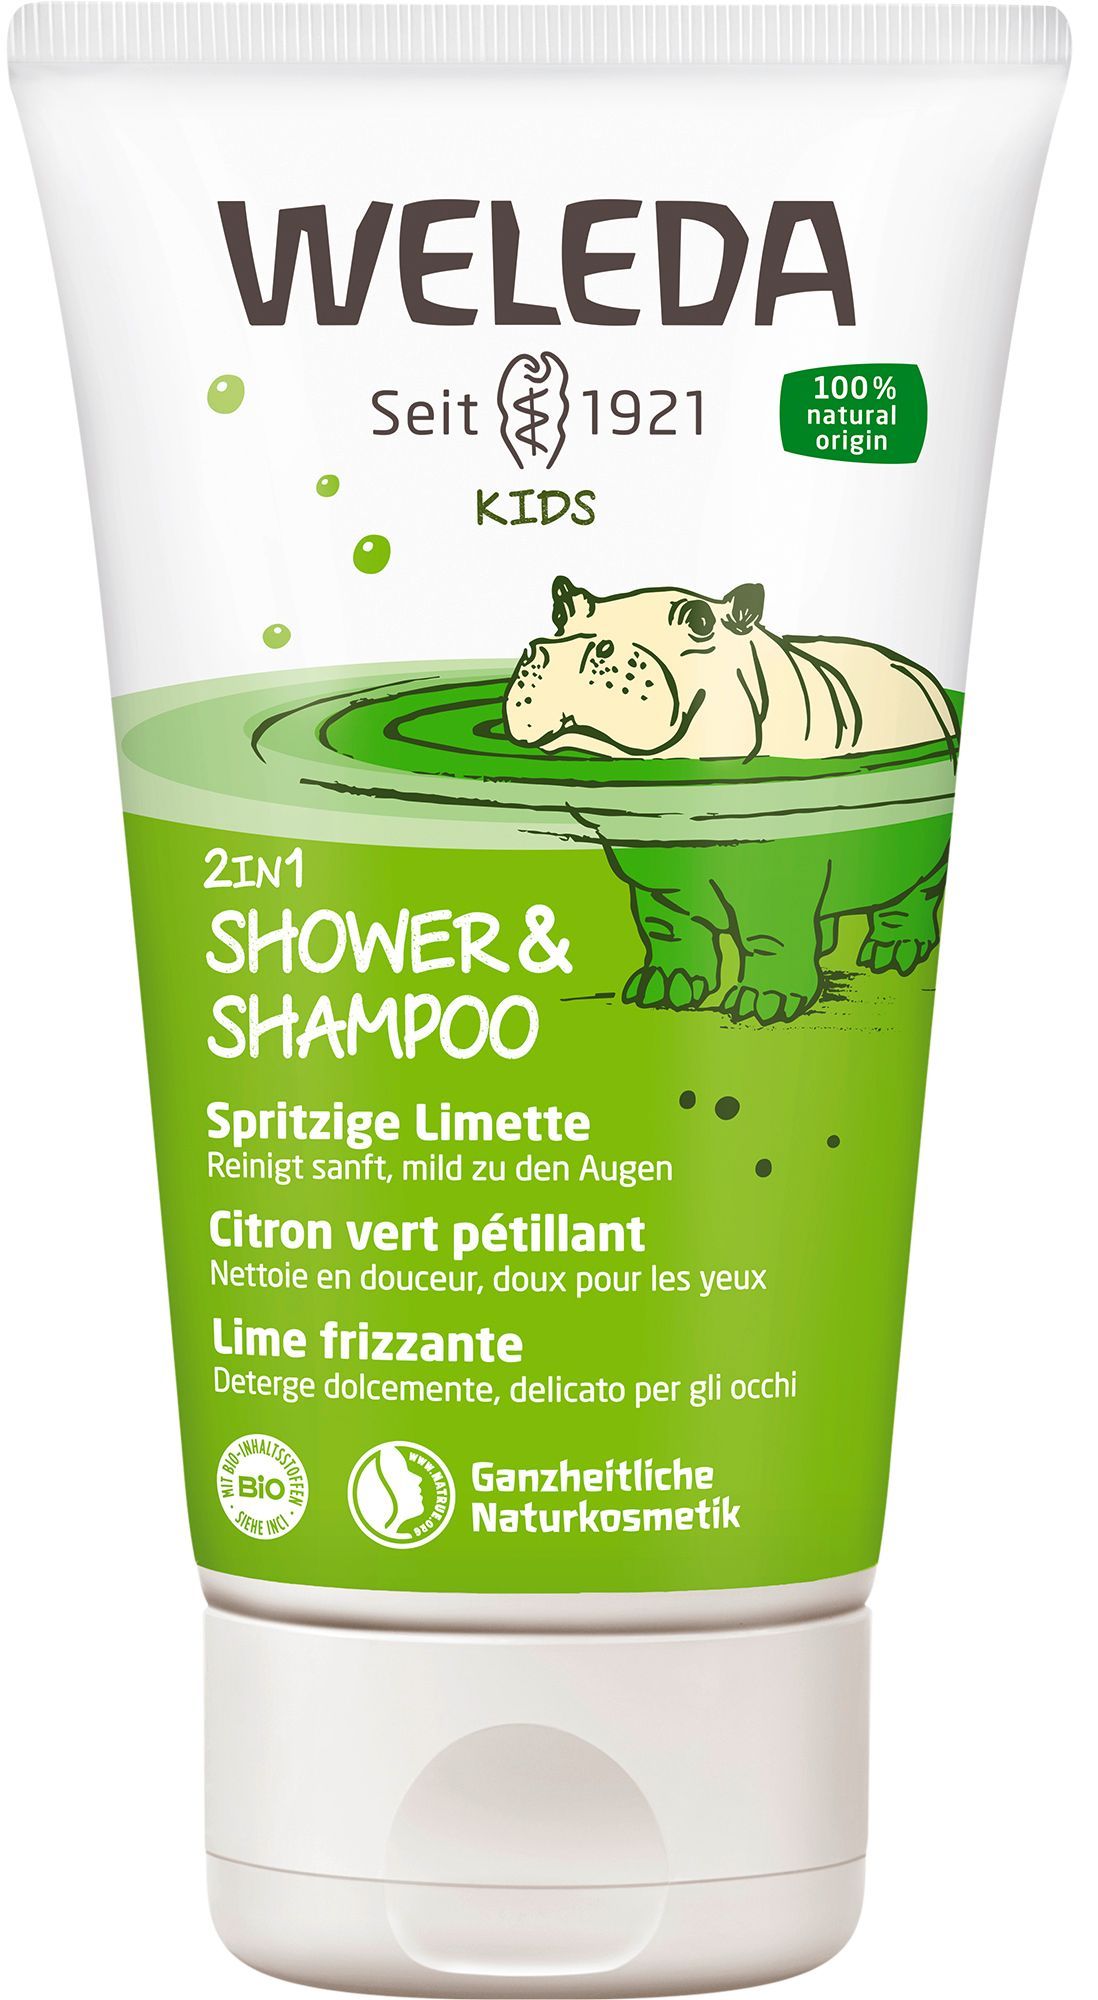 Weleda Kids 2in1 Shower & Shampoo Spritzige Limette - milde & erfrischende 2in1 Reinigung für Kinder